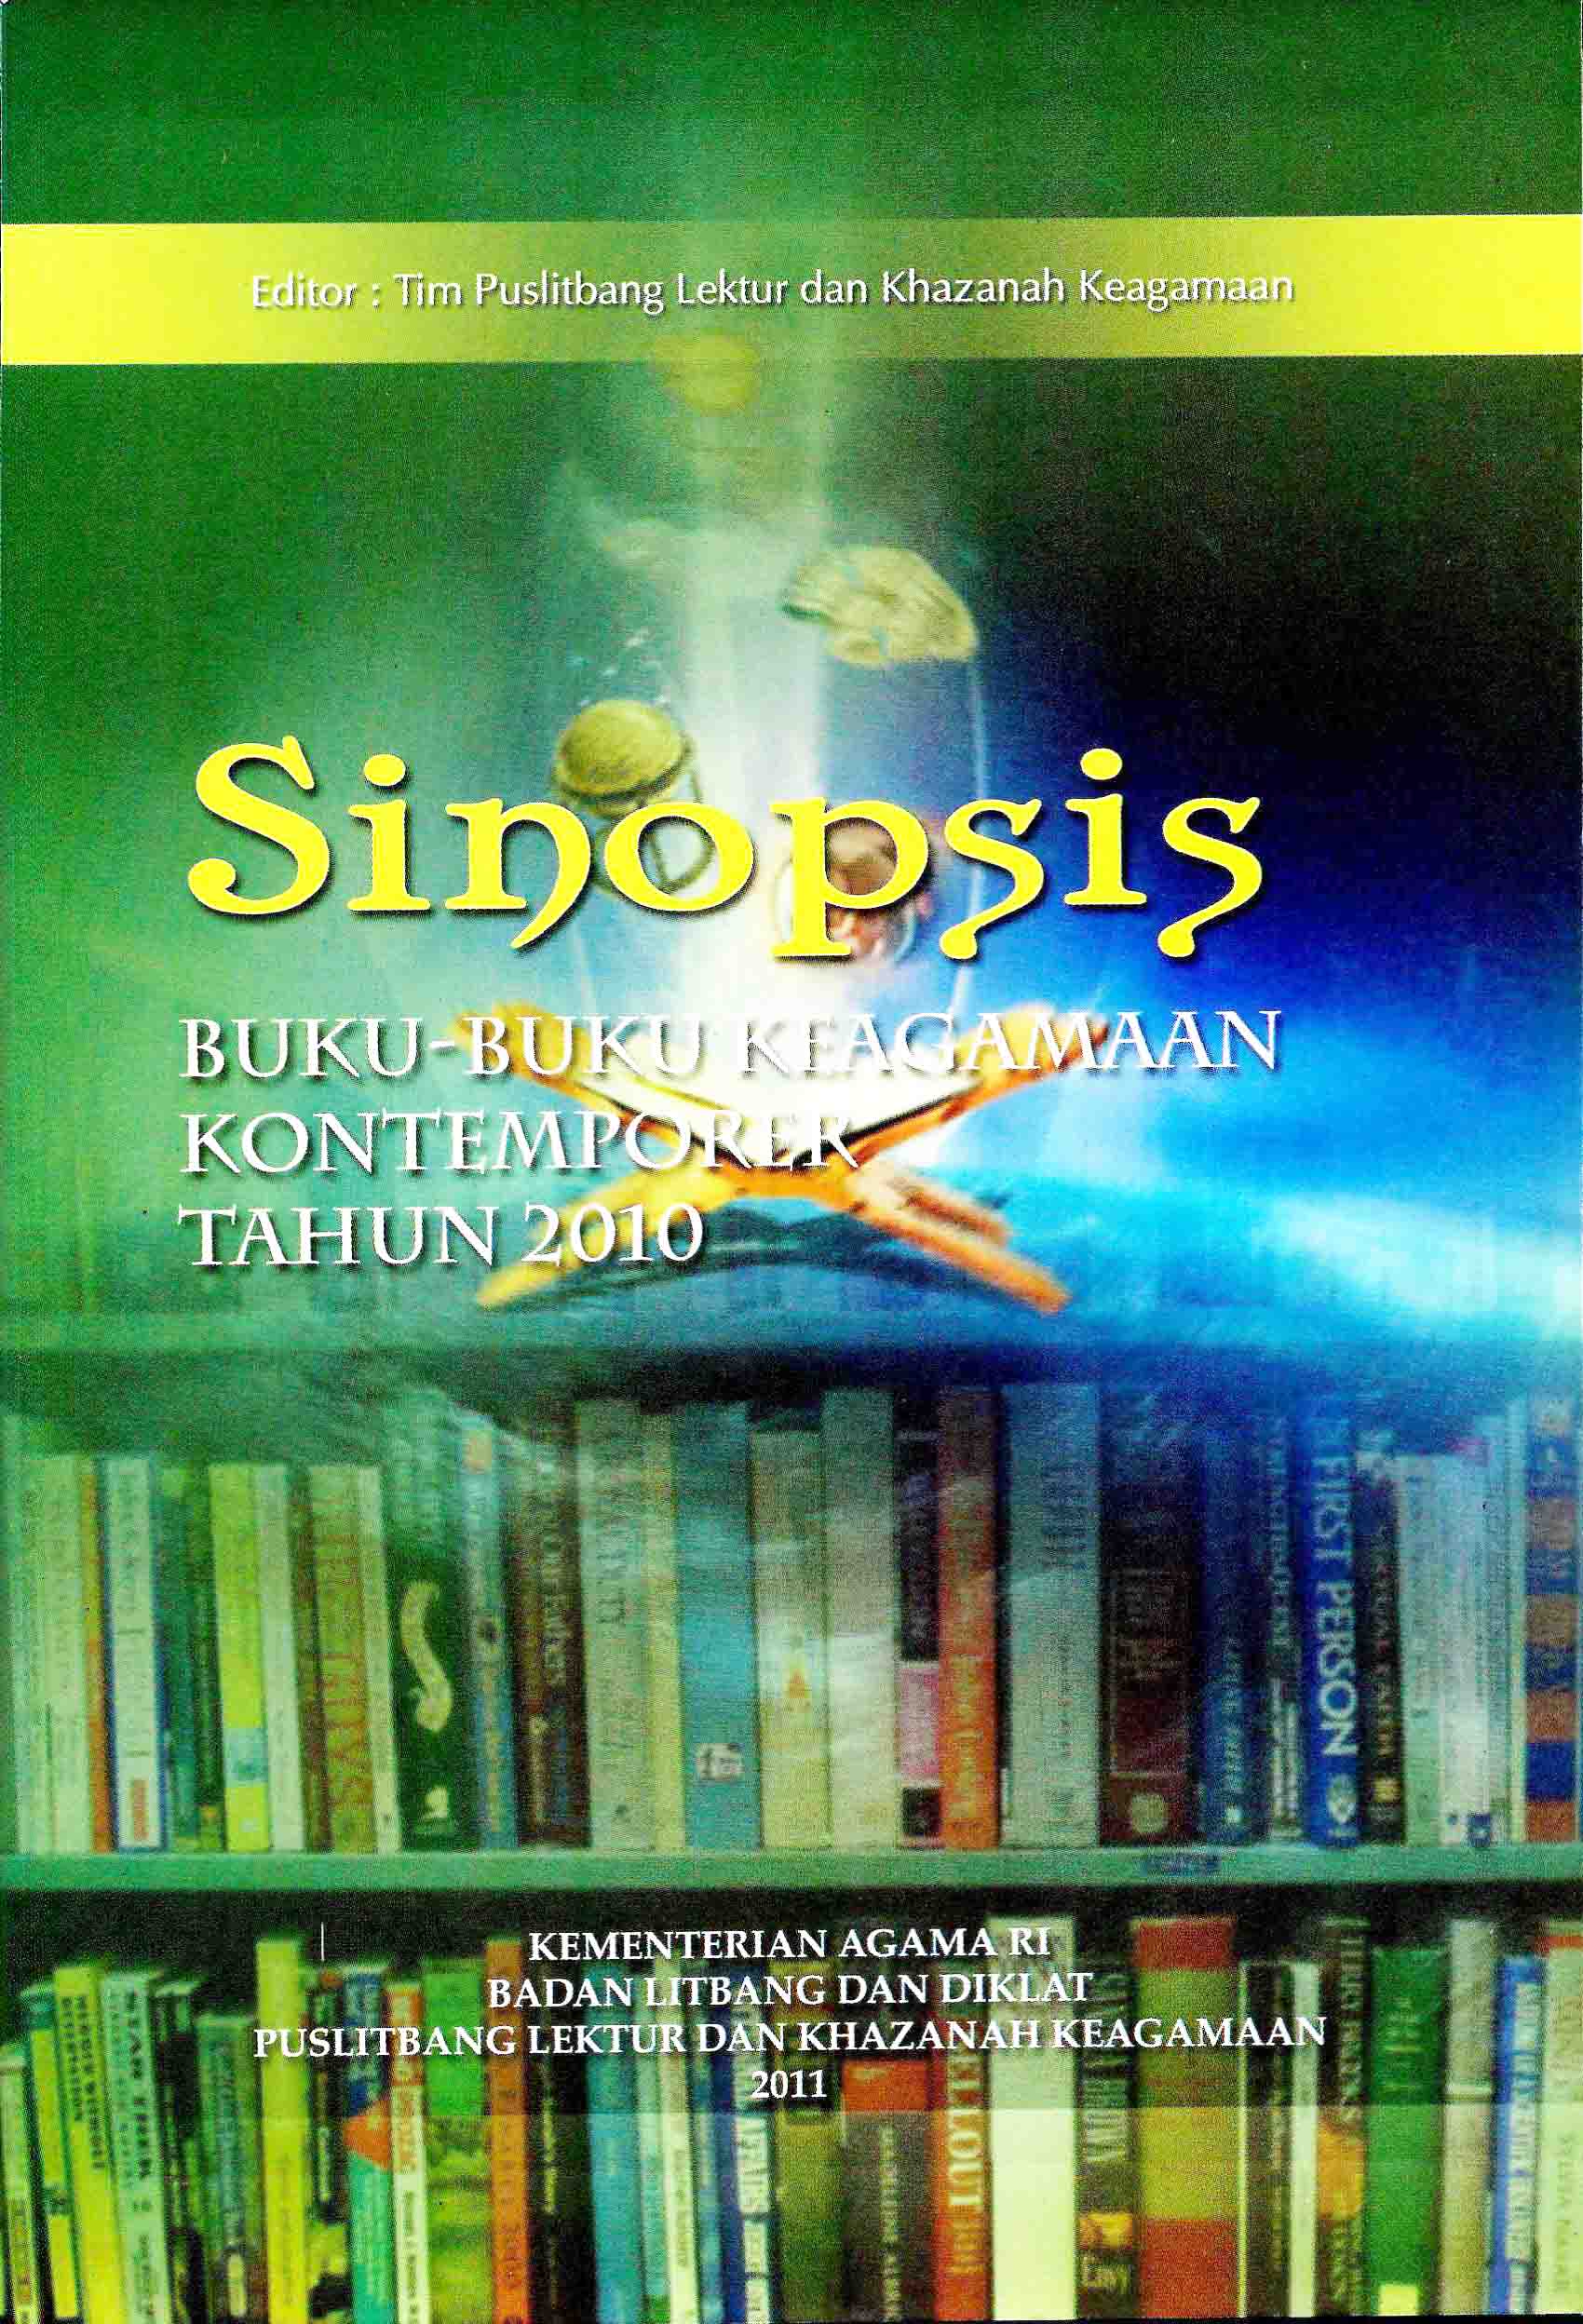 Sinopsis Buku – Buku Keagamaan Kontemporer Tahun 2010